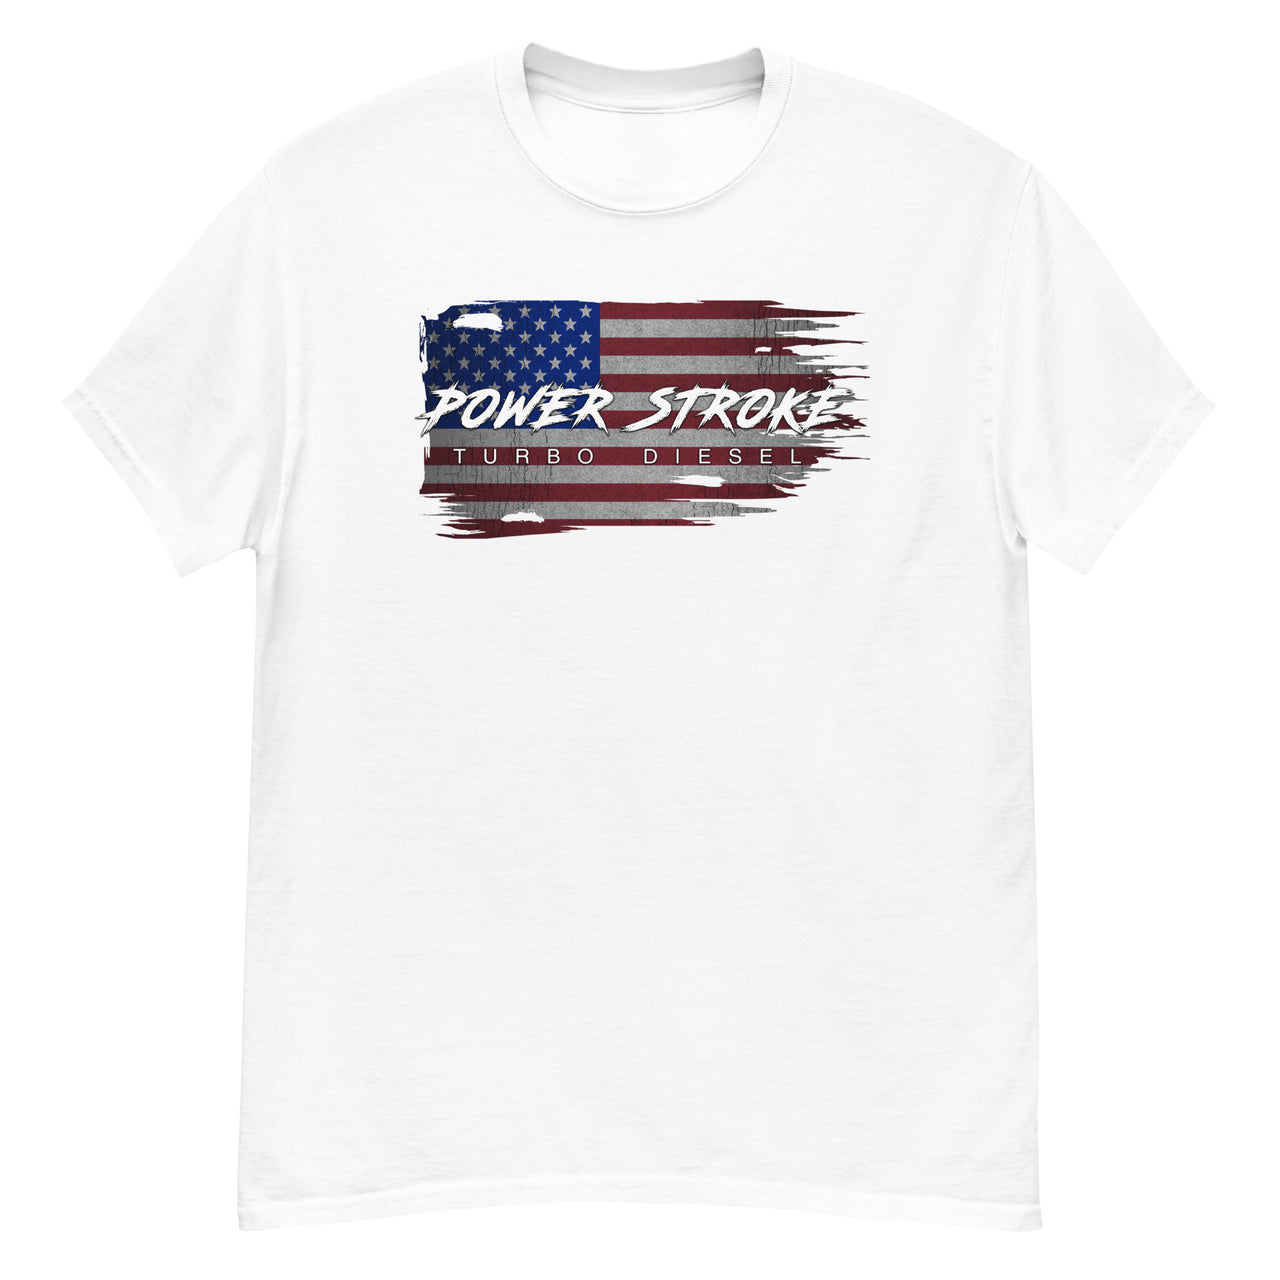 Power Stroke Diesel American Flag T-Shirt in black from Aggressive ThreadPower Stroke Diesel American Flag T-Shirt in white from Aggressive Thread